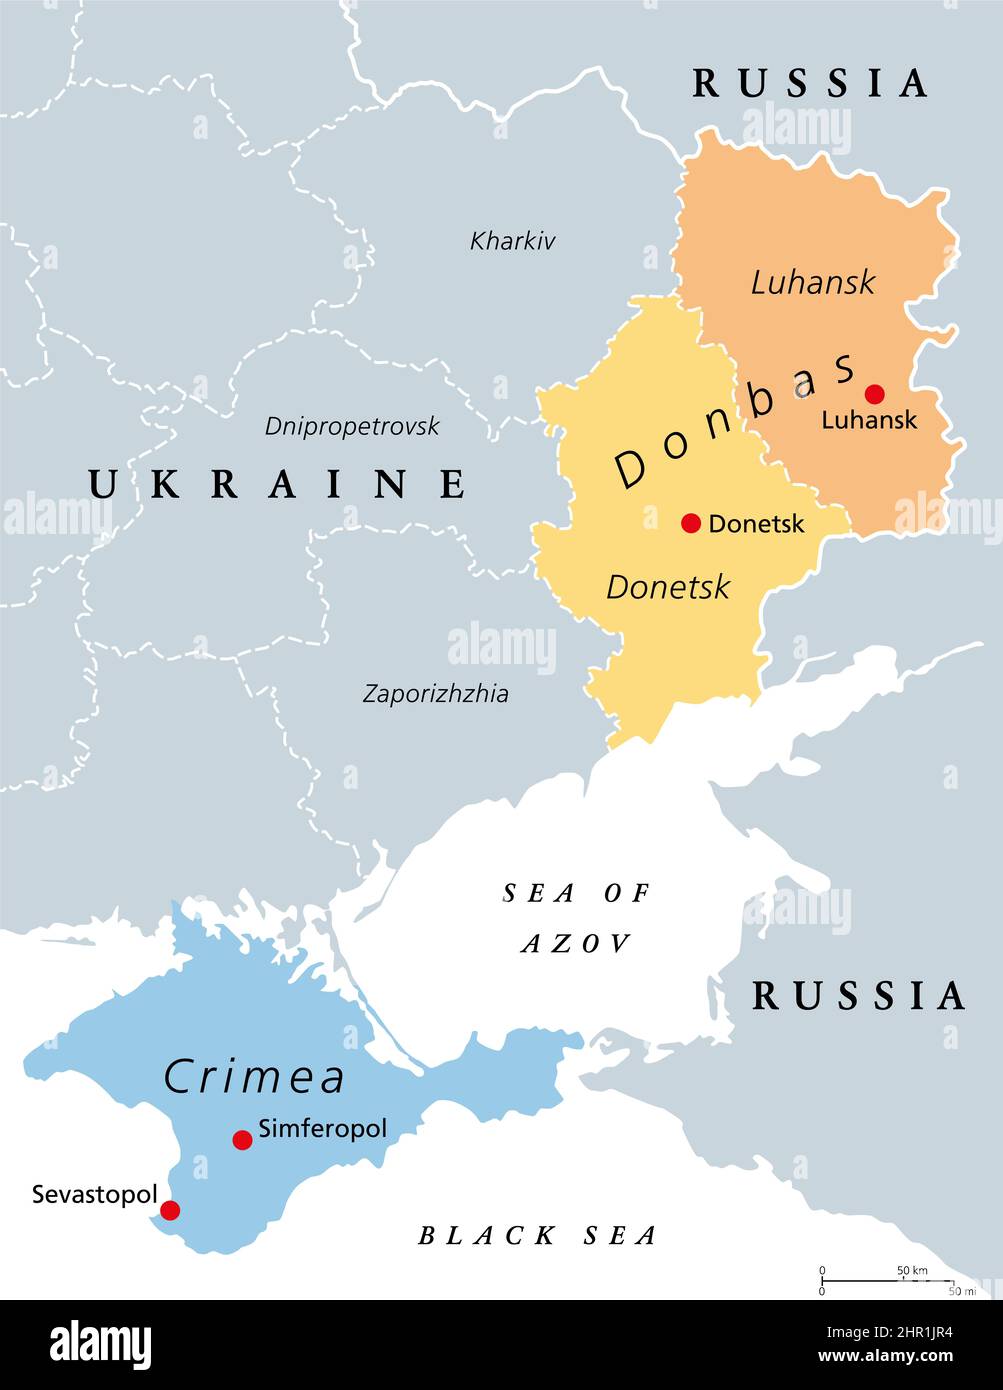 Donbas und Krim, politische Landkarte der Ukraine. Die umstrittenen Gebiete Krim Halbinsel an der Küste des Schwarzen Meeres, und der Donbass-Region von Luhansk gebildet. Stockfoto